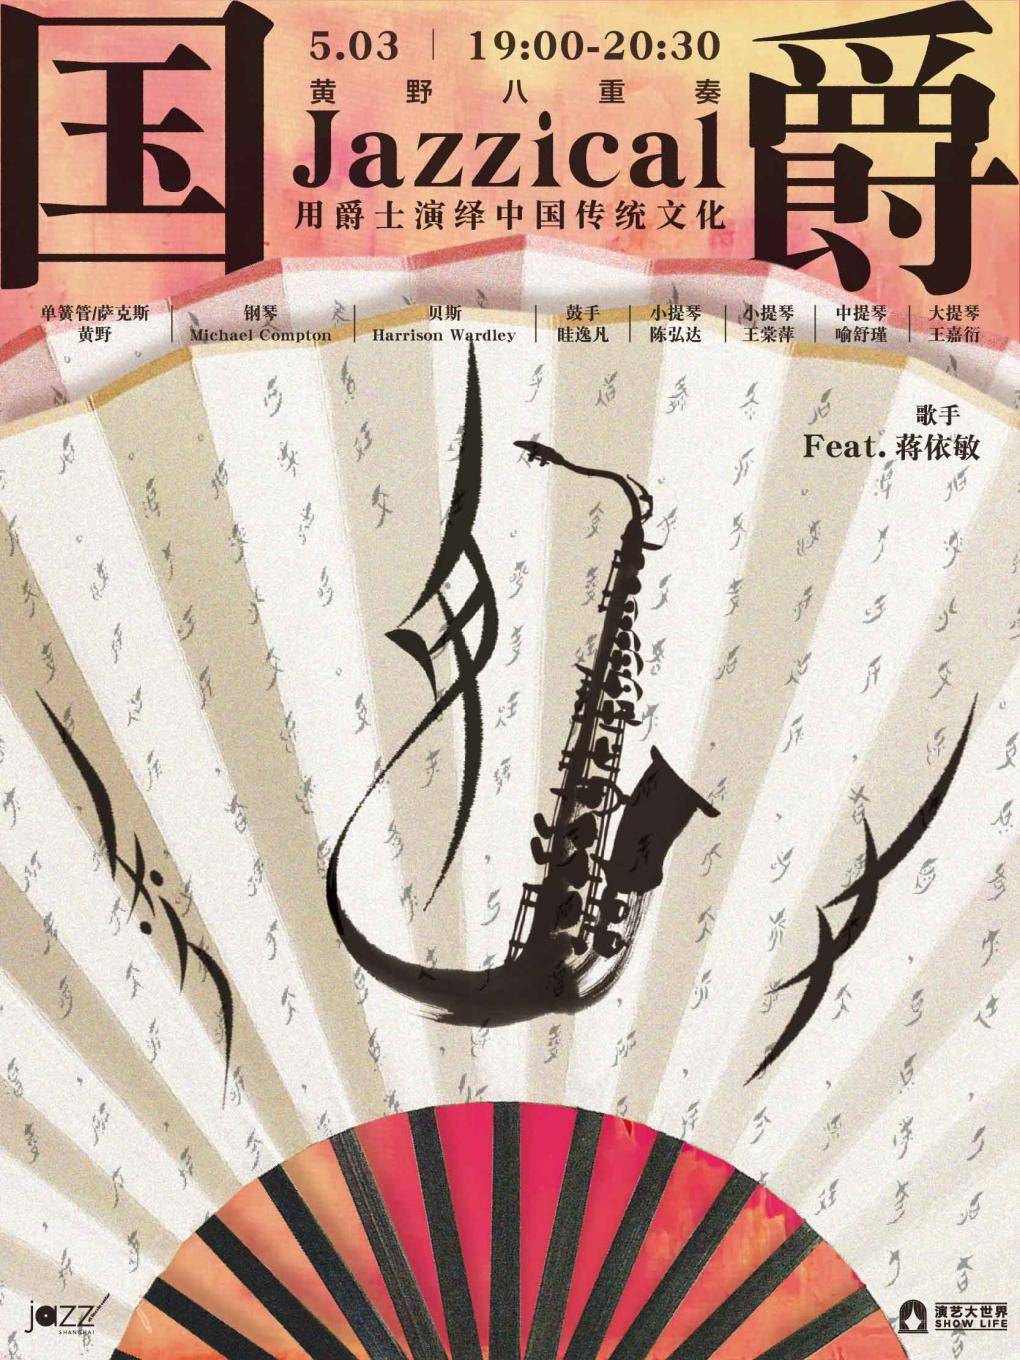 [Jazz @ Lincoln Center Shanghai] "Jazzical" Huang Ye Octette